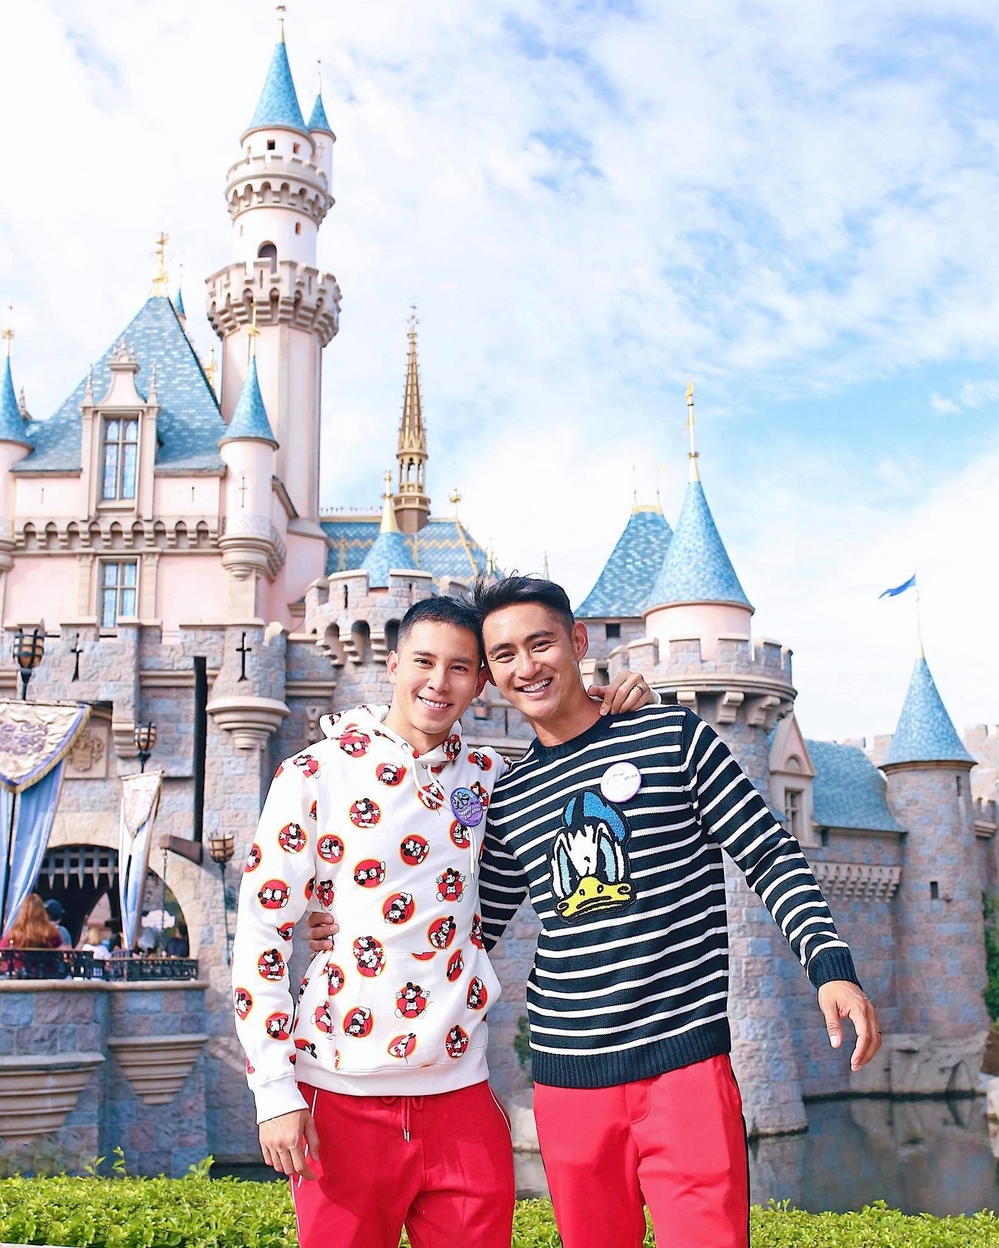 
Nhân kỷ niệm 1 năm ngày cưới, Hồ Vĩnh Khoa cùng người bạn đời của mình đã quyết định tới công viên Disneyland, Mỹ để ghi lại những giây phút bình dị, tận hưởng khoảng thời gian ý nghĩa, hạnh phúc nhất. - Tin sao Viet - Tin tuc sao Viet - Scandal sao Viet - Tin tuc cua Sao - Tin cua Sao